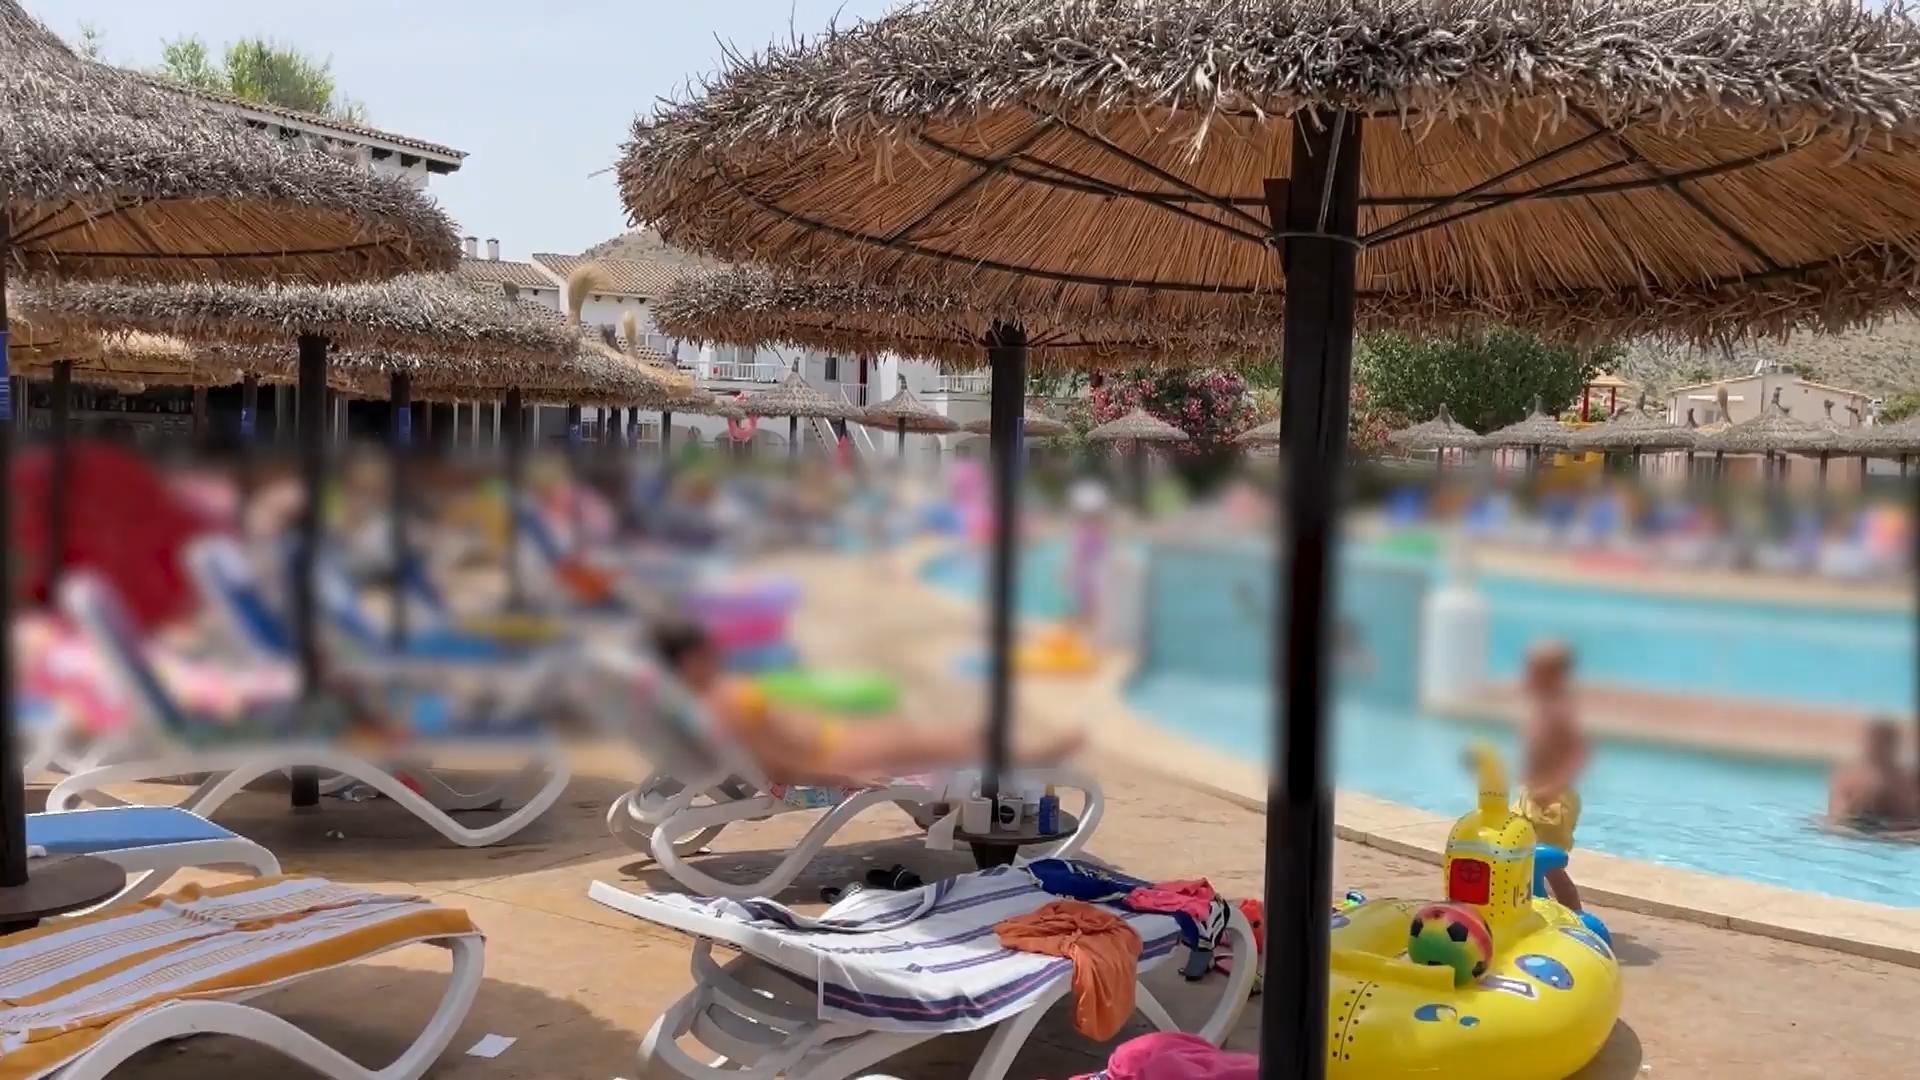 Chlor-Vergiftung in Hotelpool! 26 Gäste verletzt Schock auf Mallorca